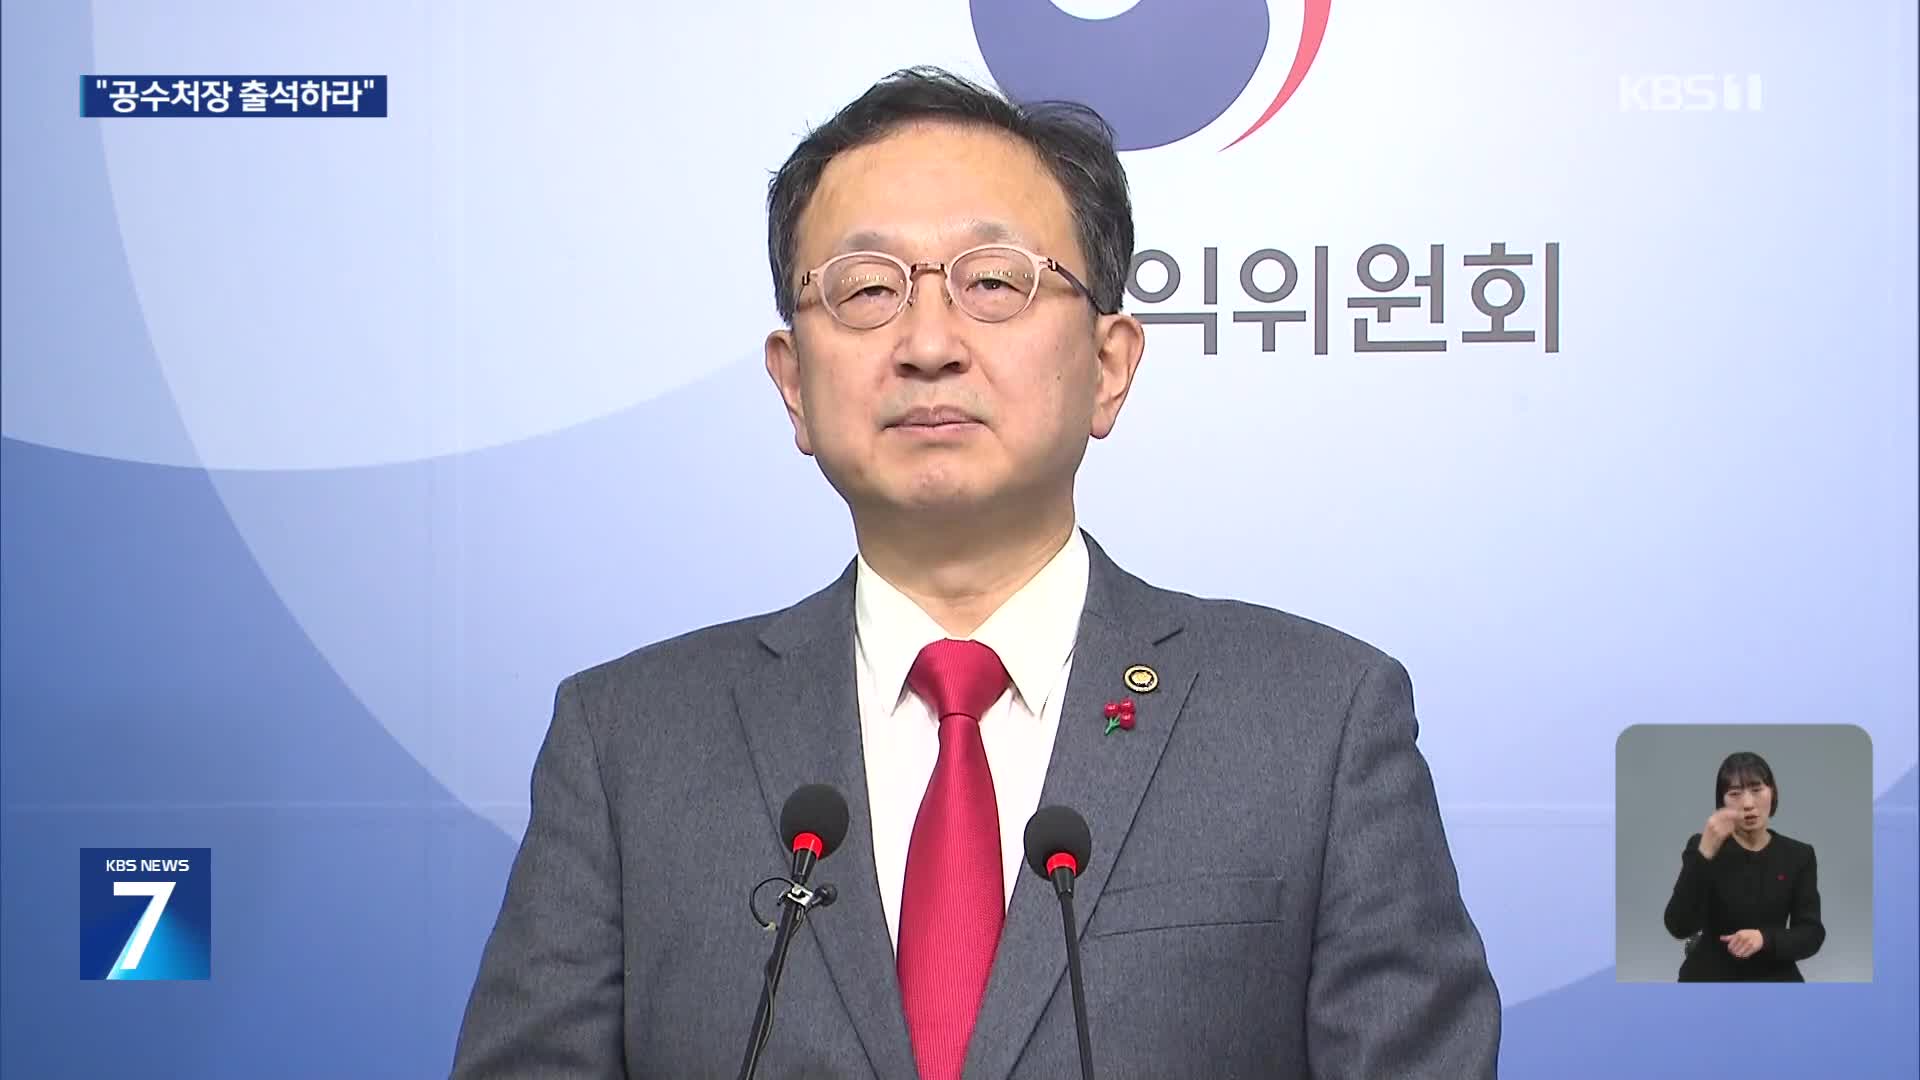 “‘후임 인선 문자’ 부패행위 해당”…권익위 공수처장 조사 촉구